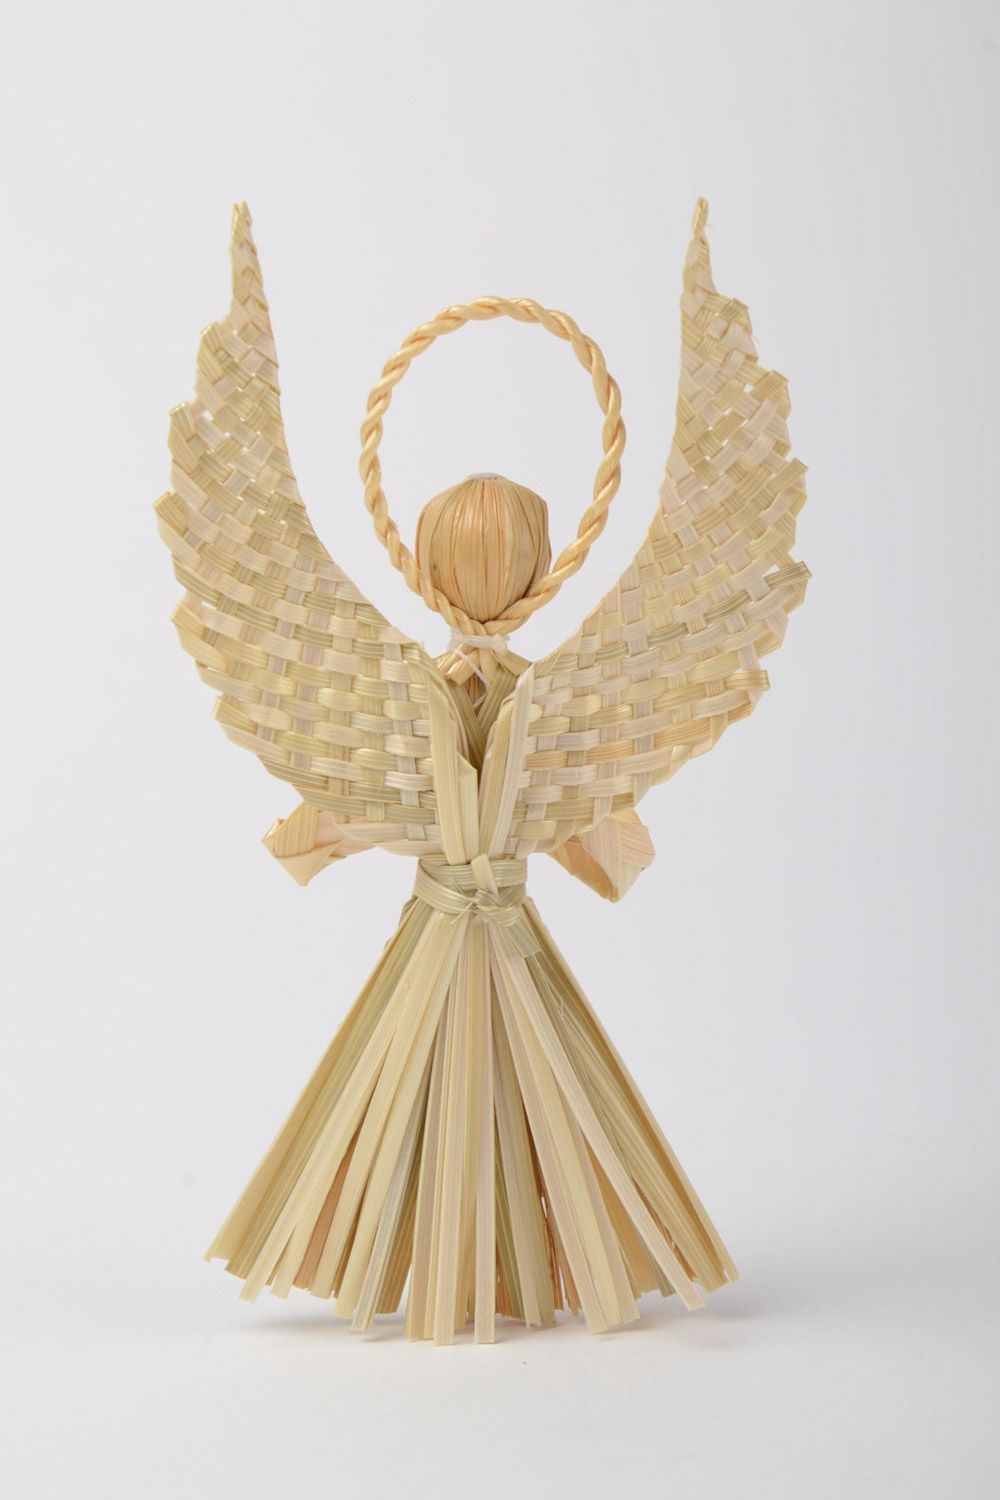 Suspension décorative Ange tressé de paille figurine originale faite main photo 3